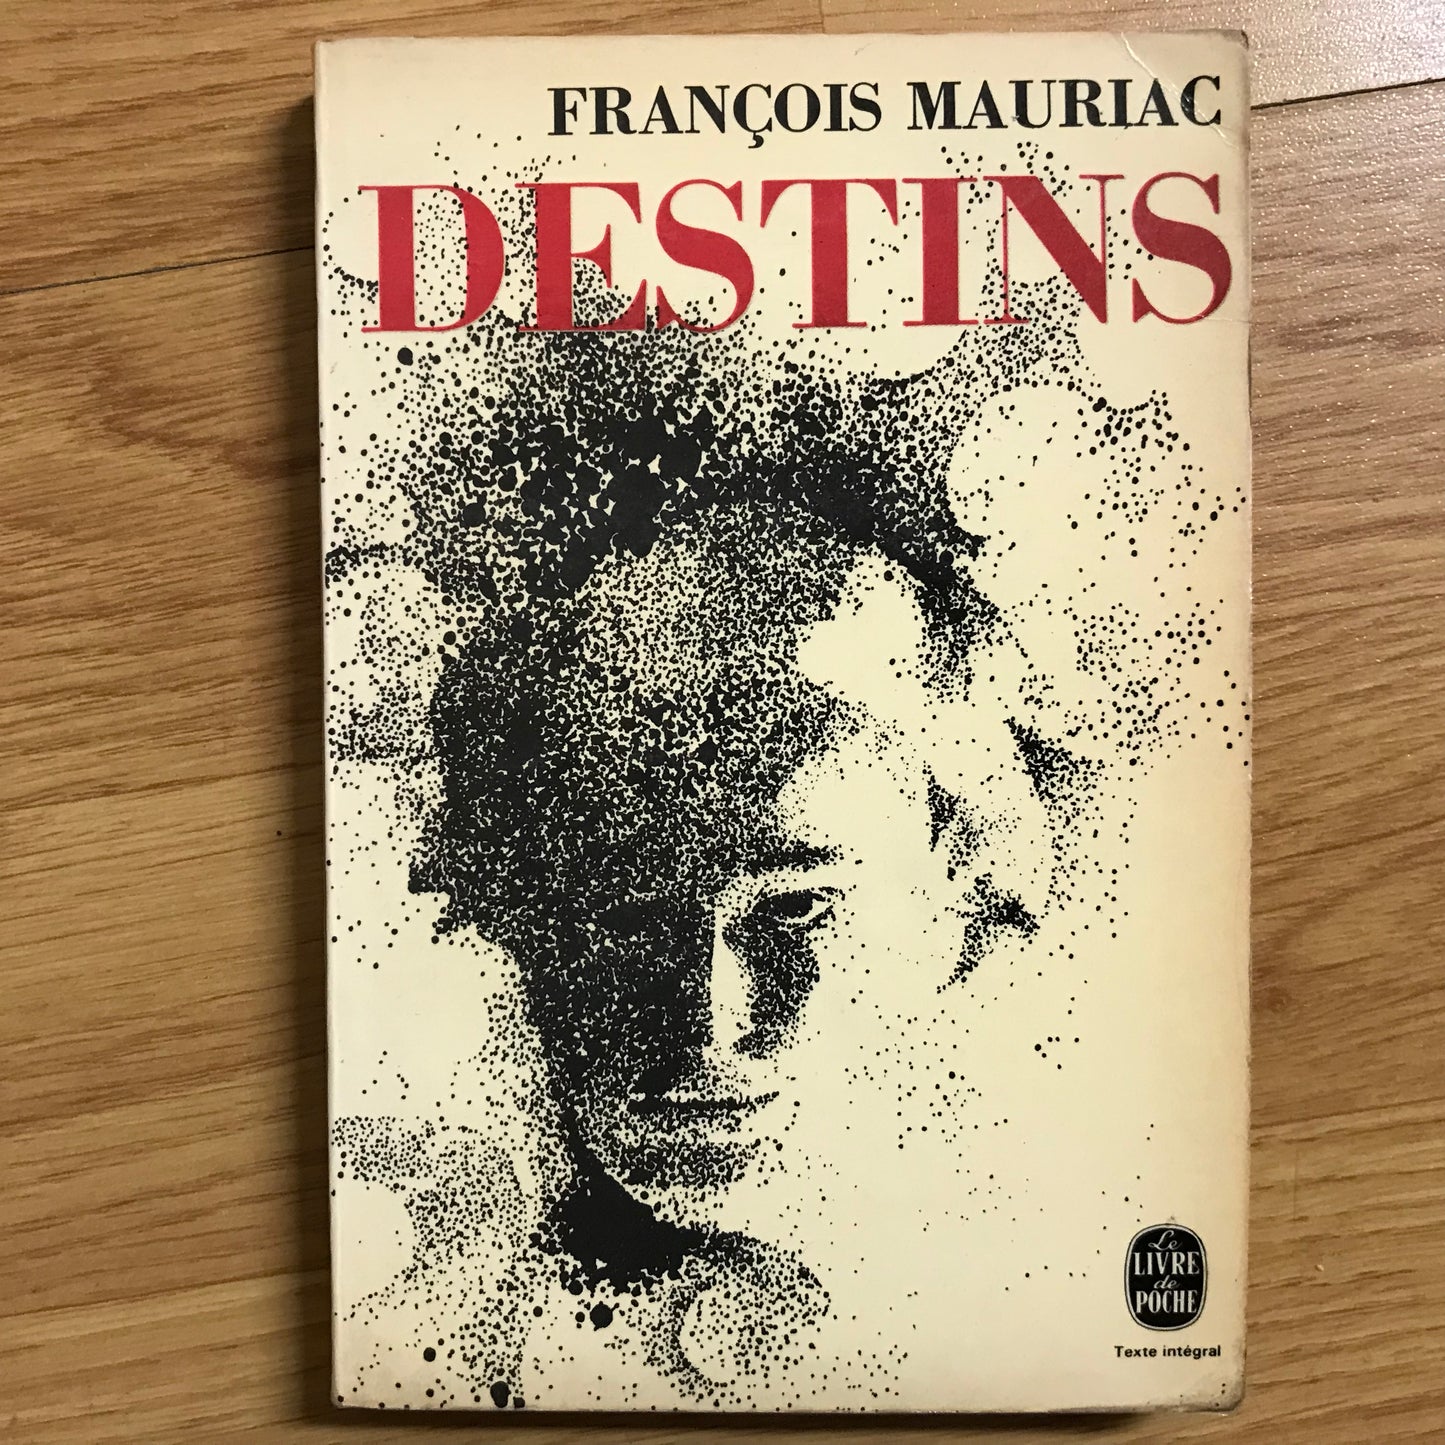 Mauriac, François - Destins